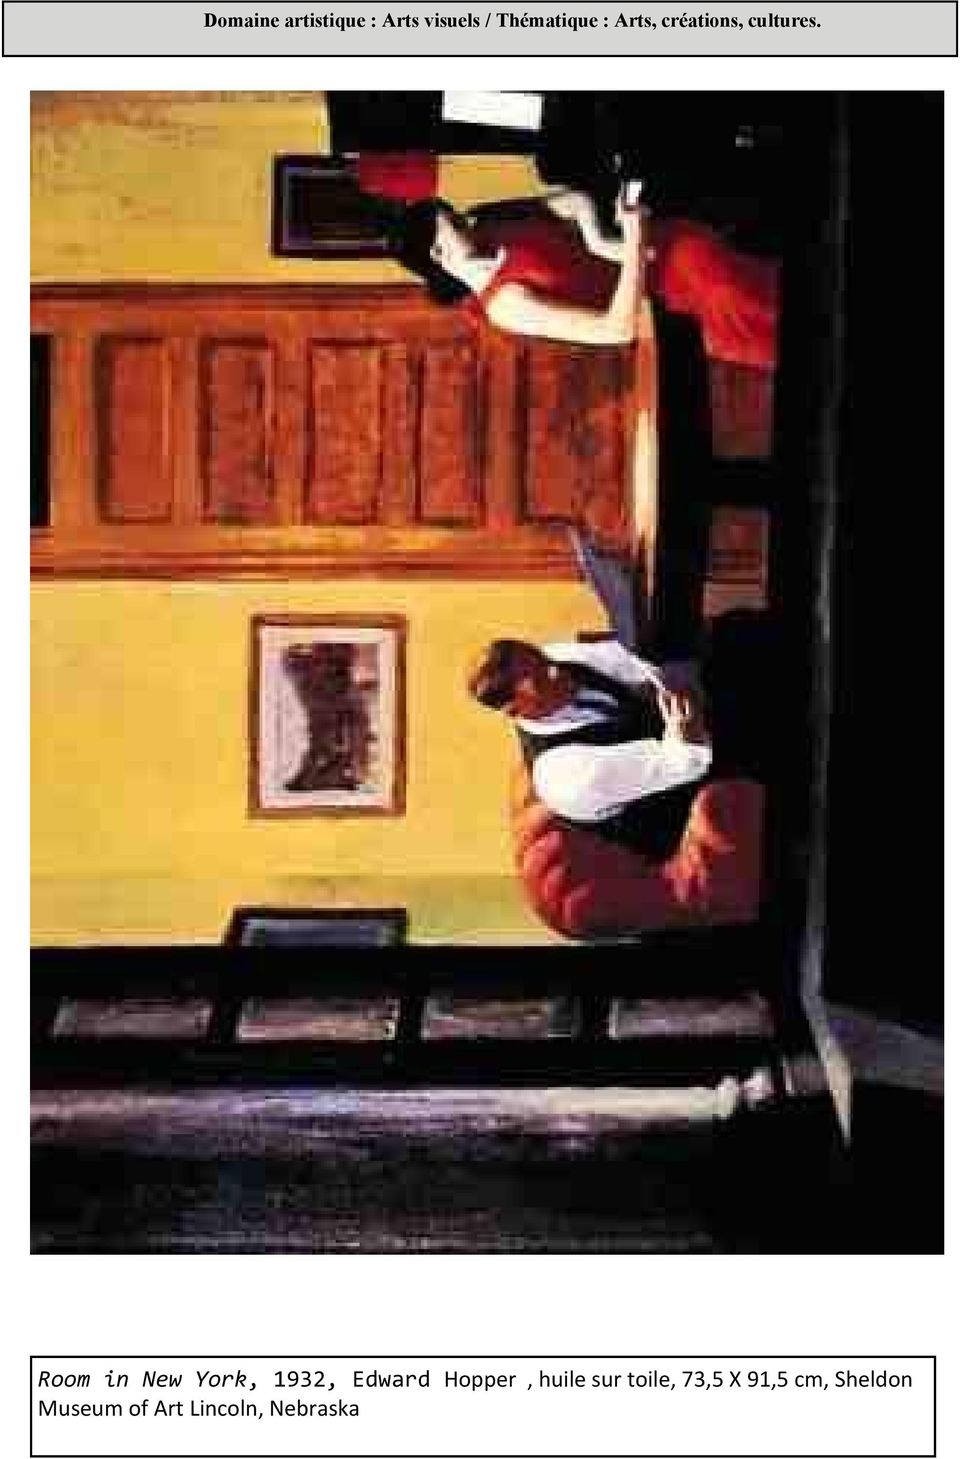 Room in New York, 1932, Edward Hopper, huile